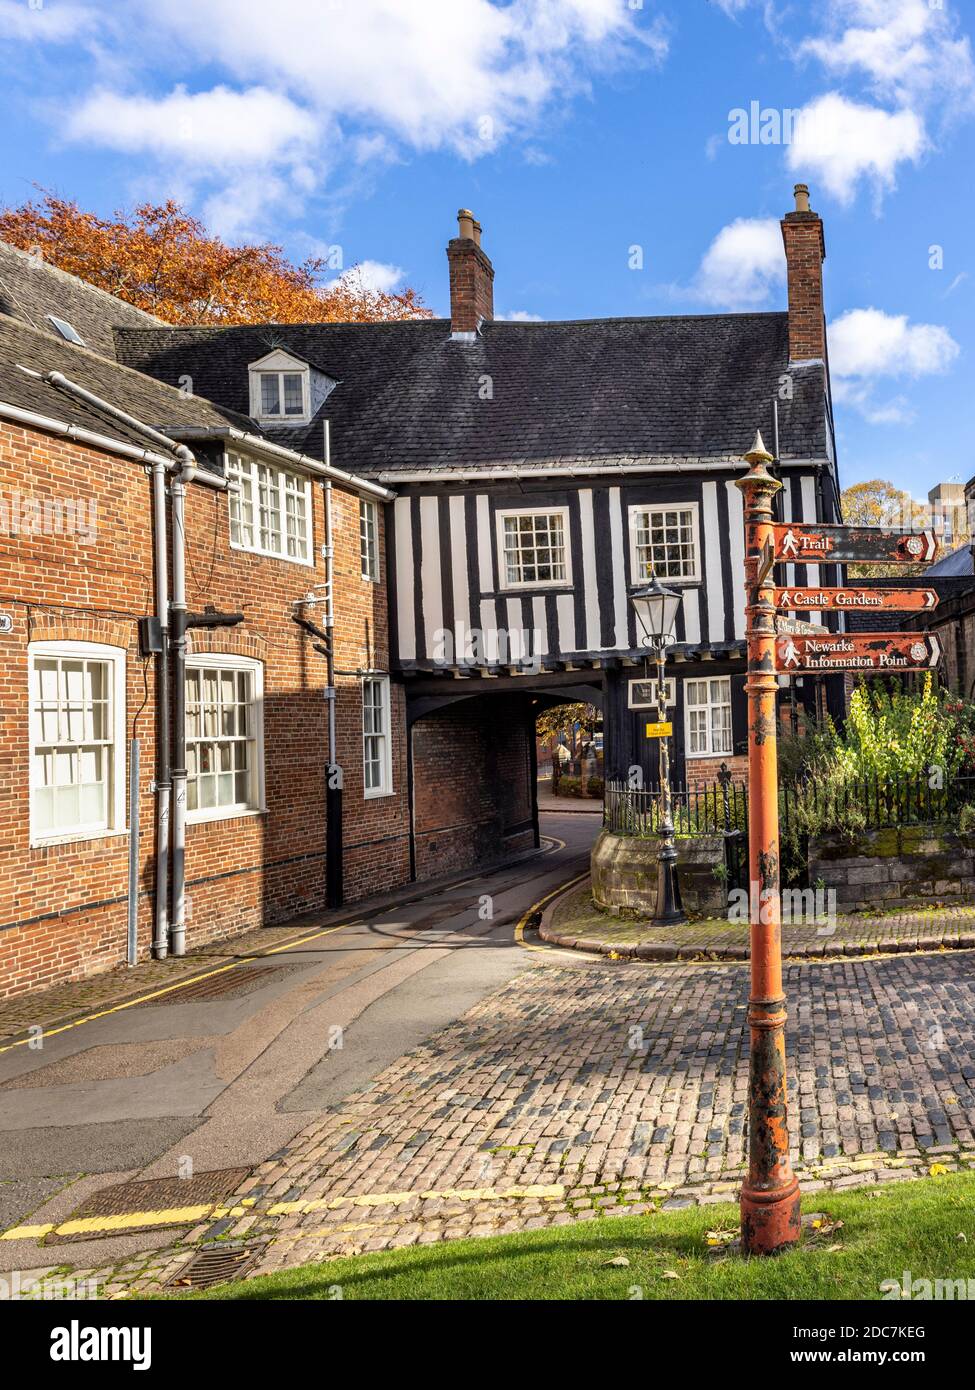 Das mittelalterliche Fachwerkhaus Castle Gate House (aus dem 15. Jahrhundert, 1445) mit einer Straße, die unter Leicester führt Stockfoto